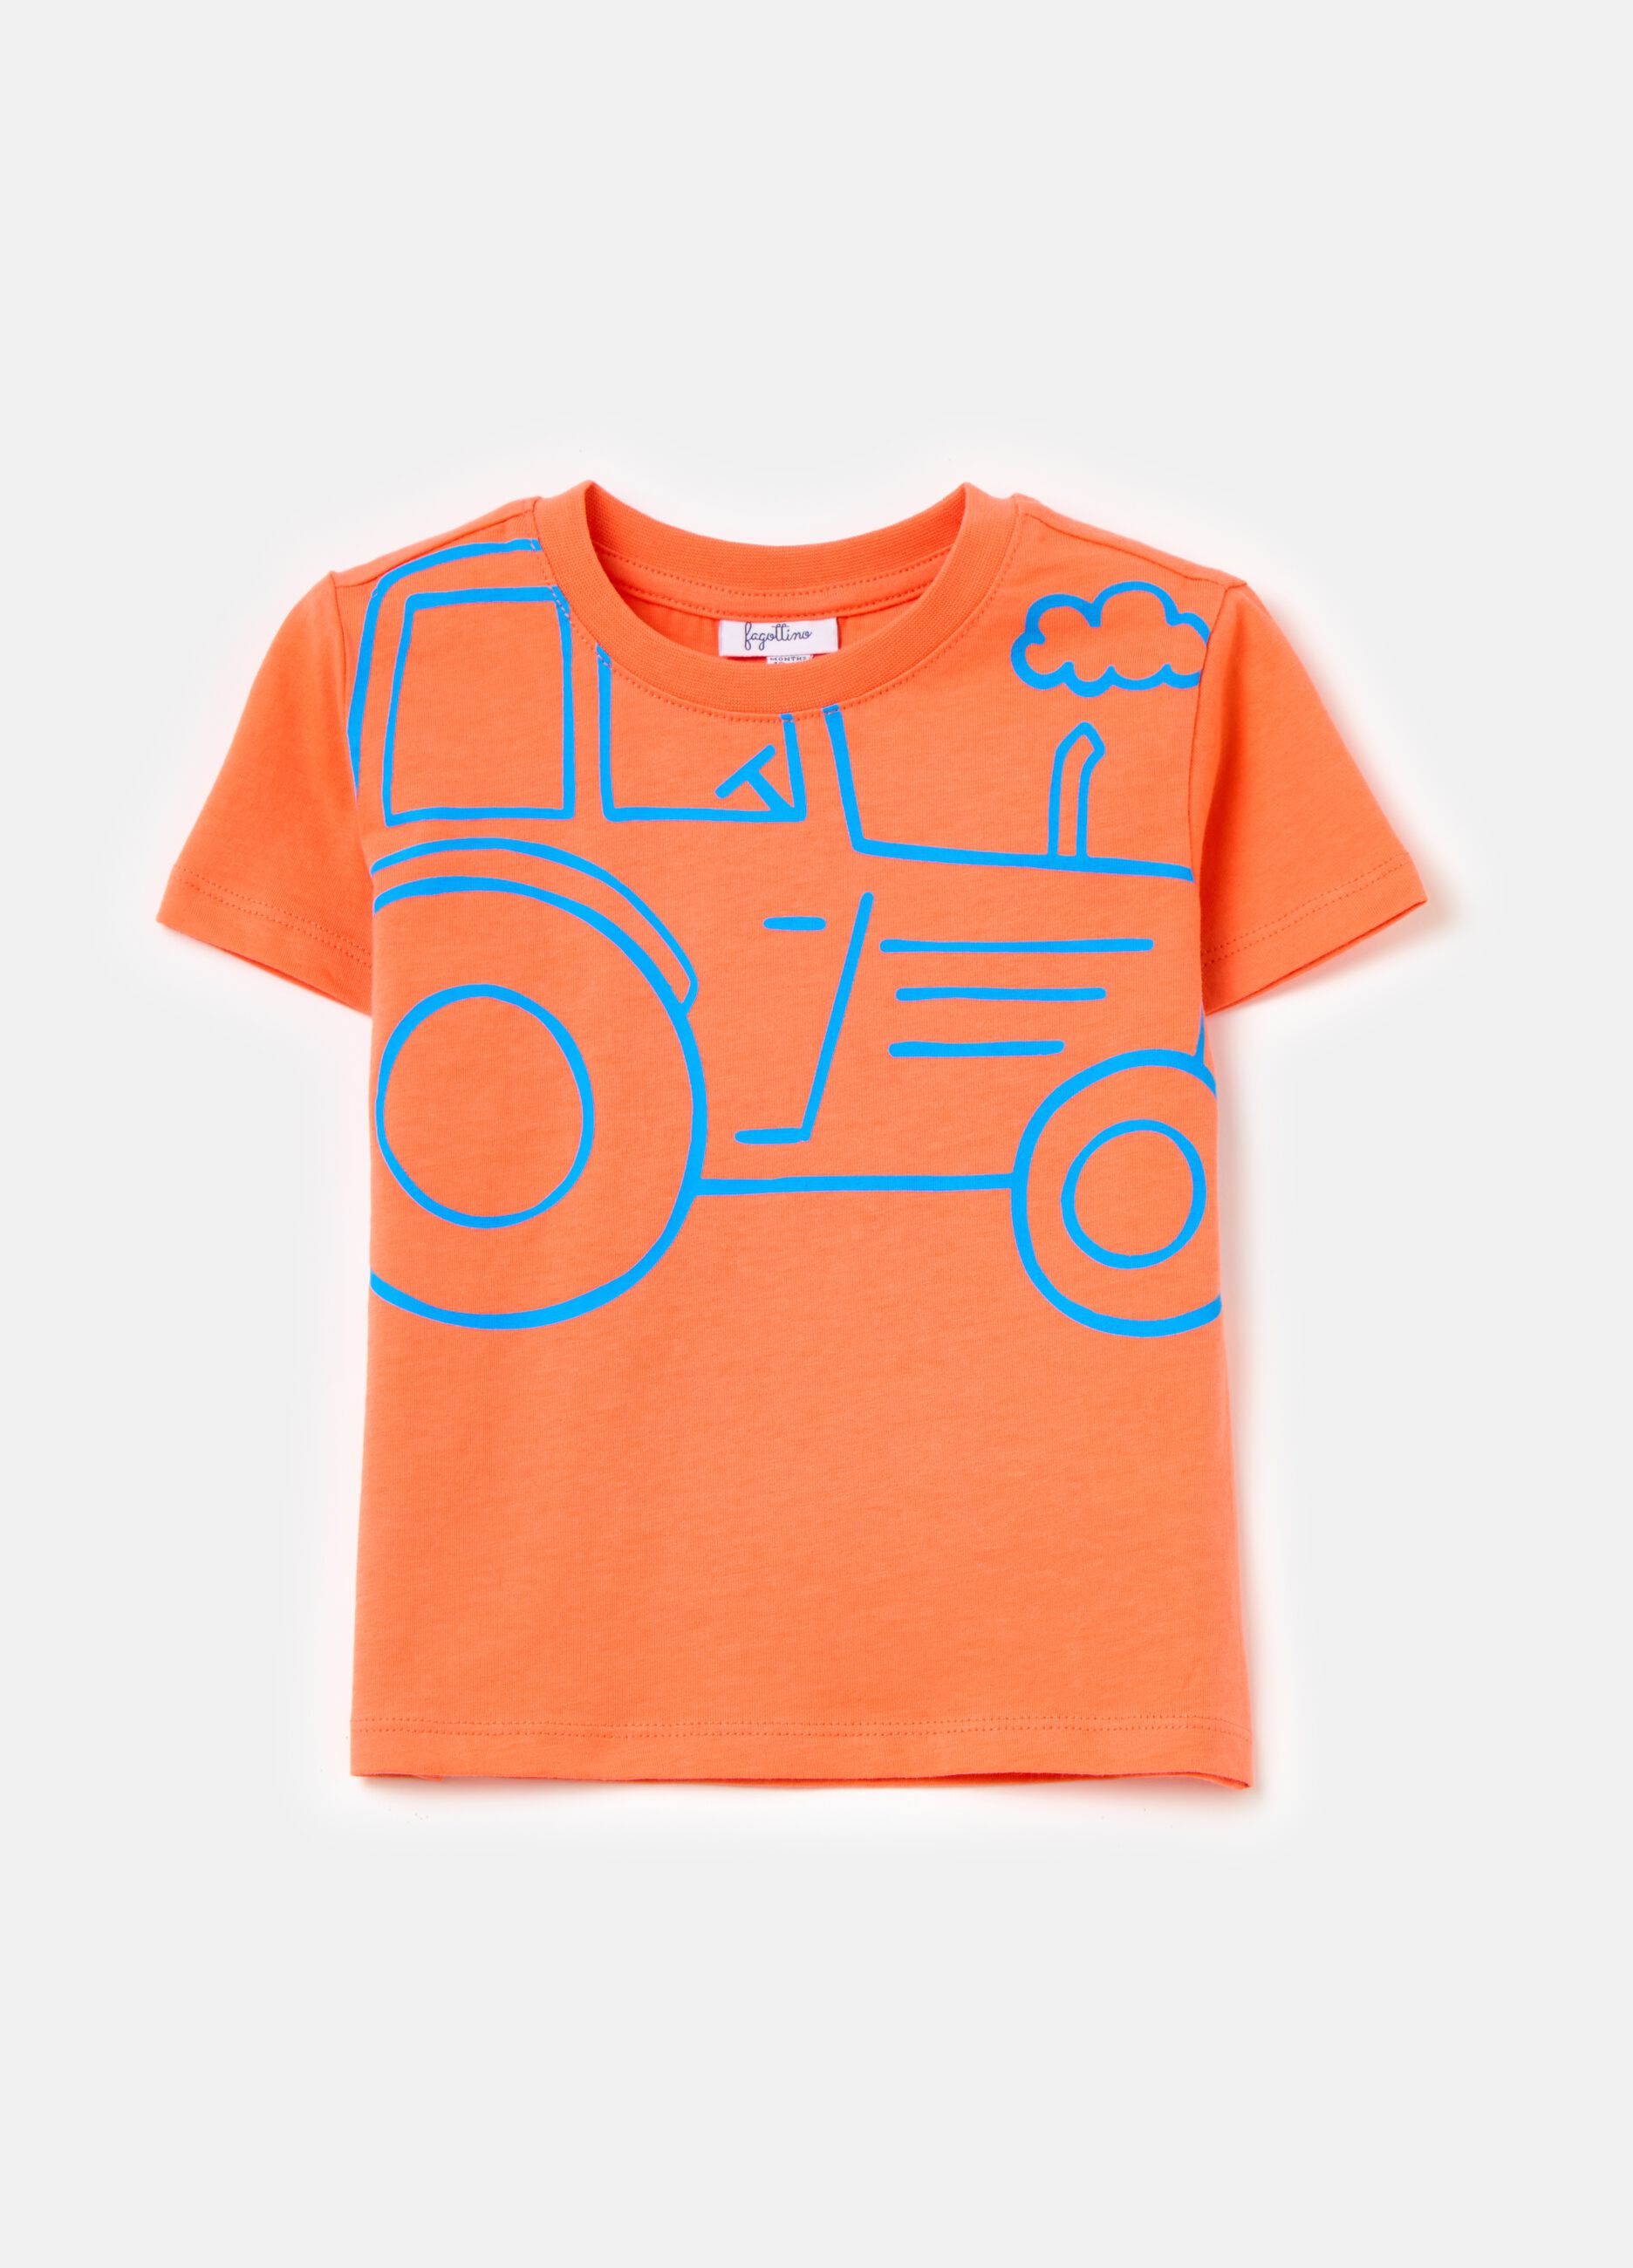 

детские оранжевые футболки Ovs для мальчиков 2009426 30-36м, Оранжевый